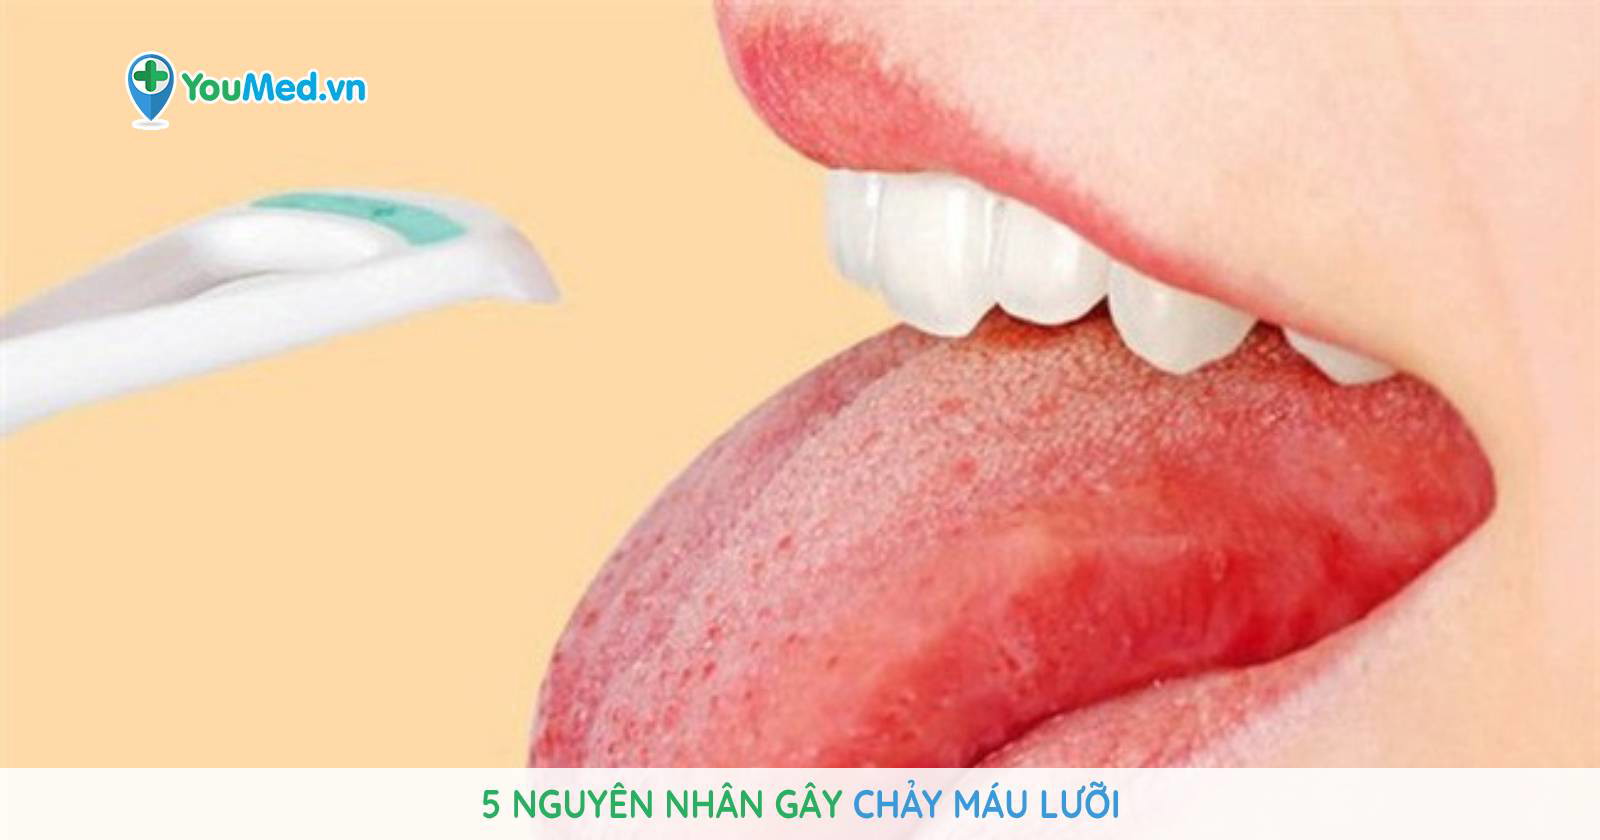 Lưỡi bị chảy máu có thể do những nguyên nhân gì?